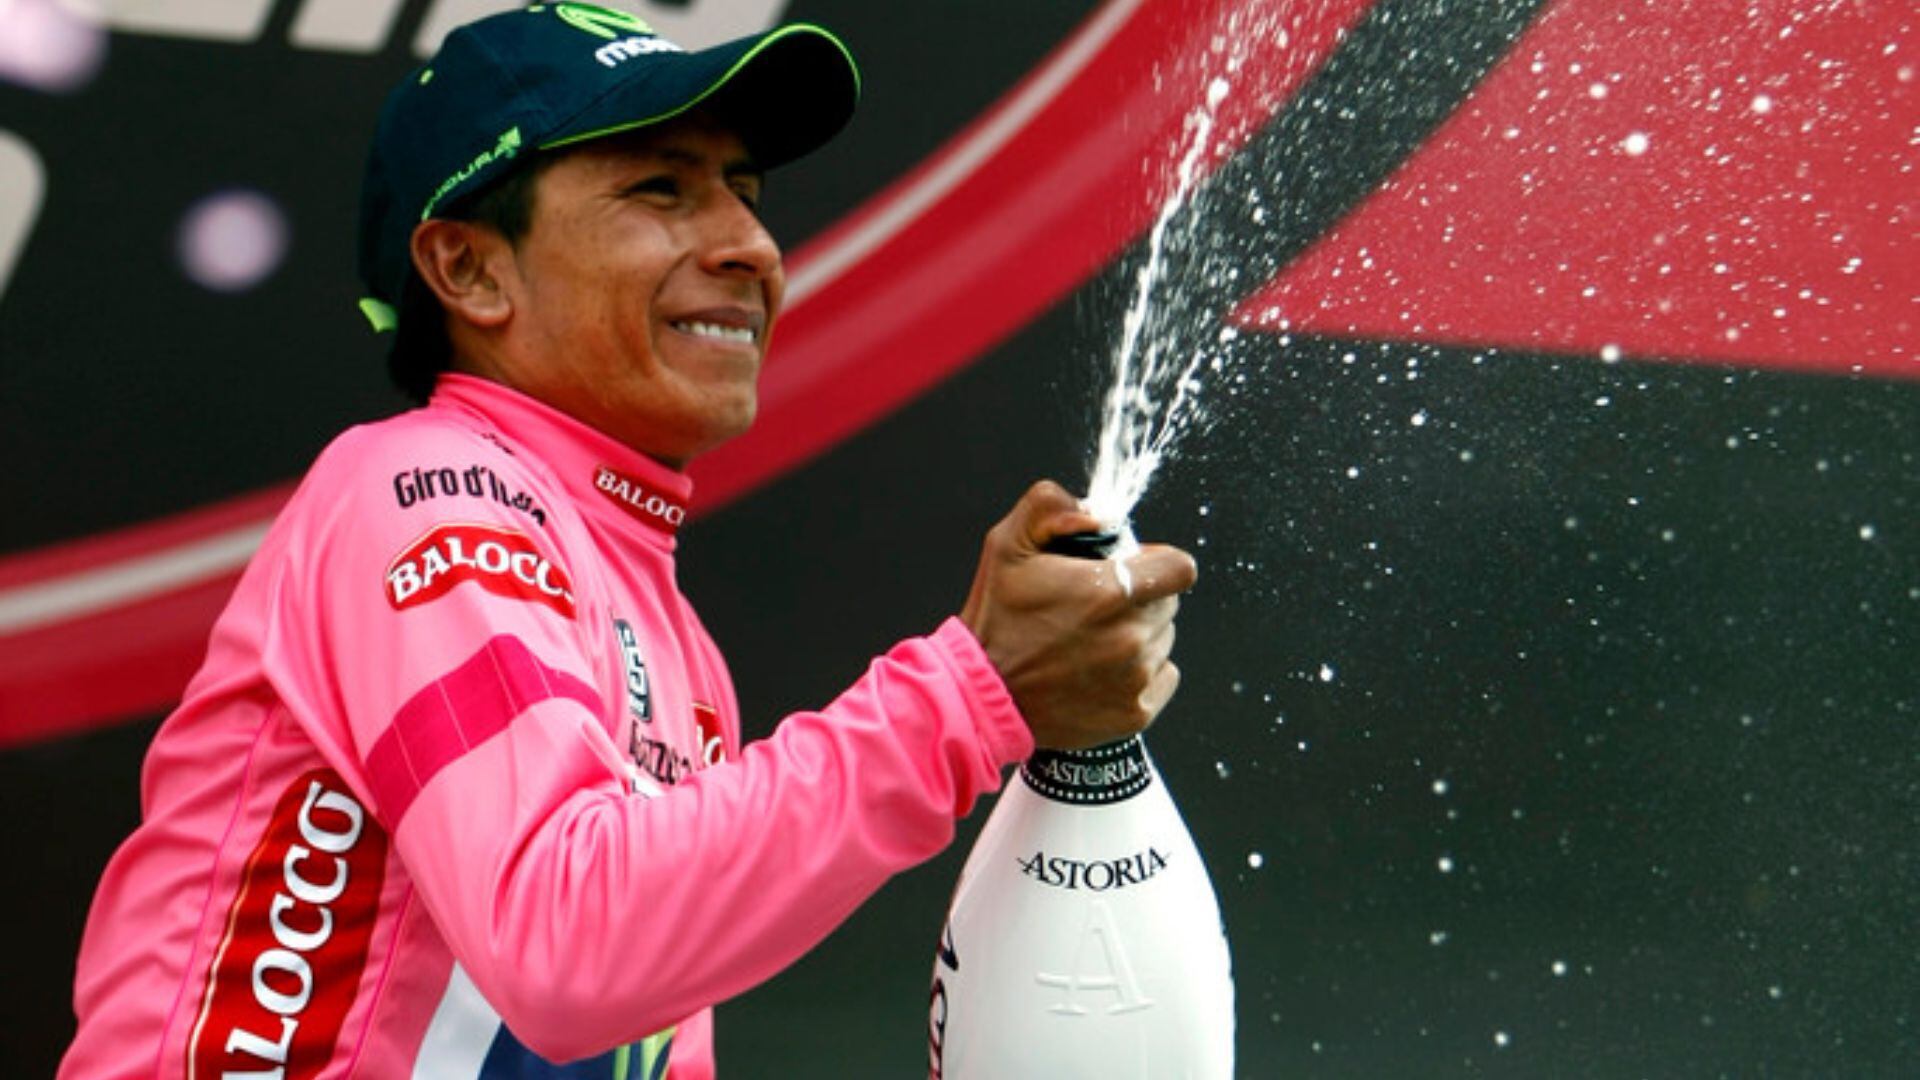 El corredor colombiano se coronó campeón del Giro de Italia. Colprensa